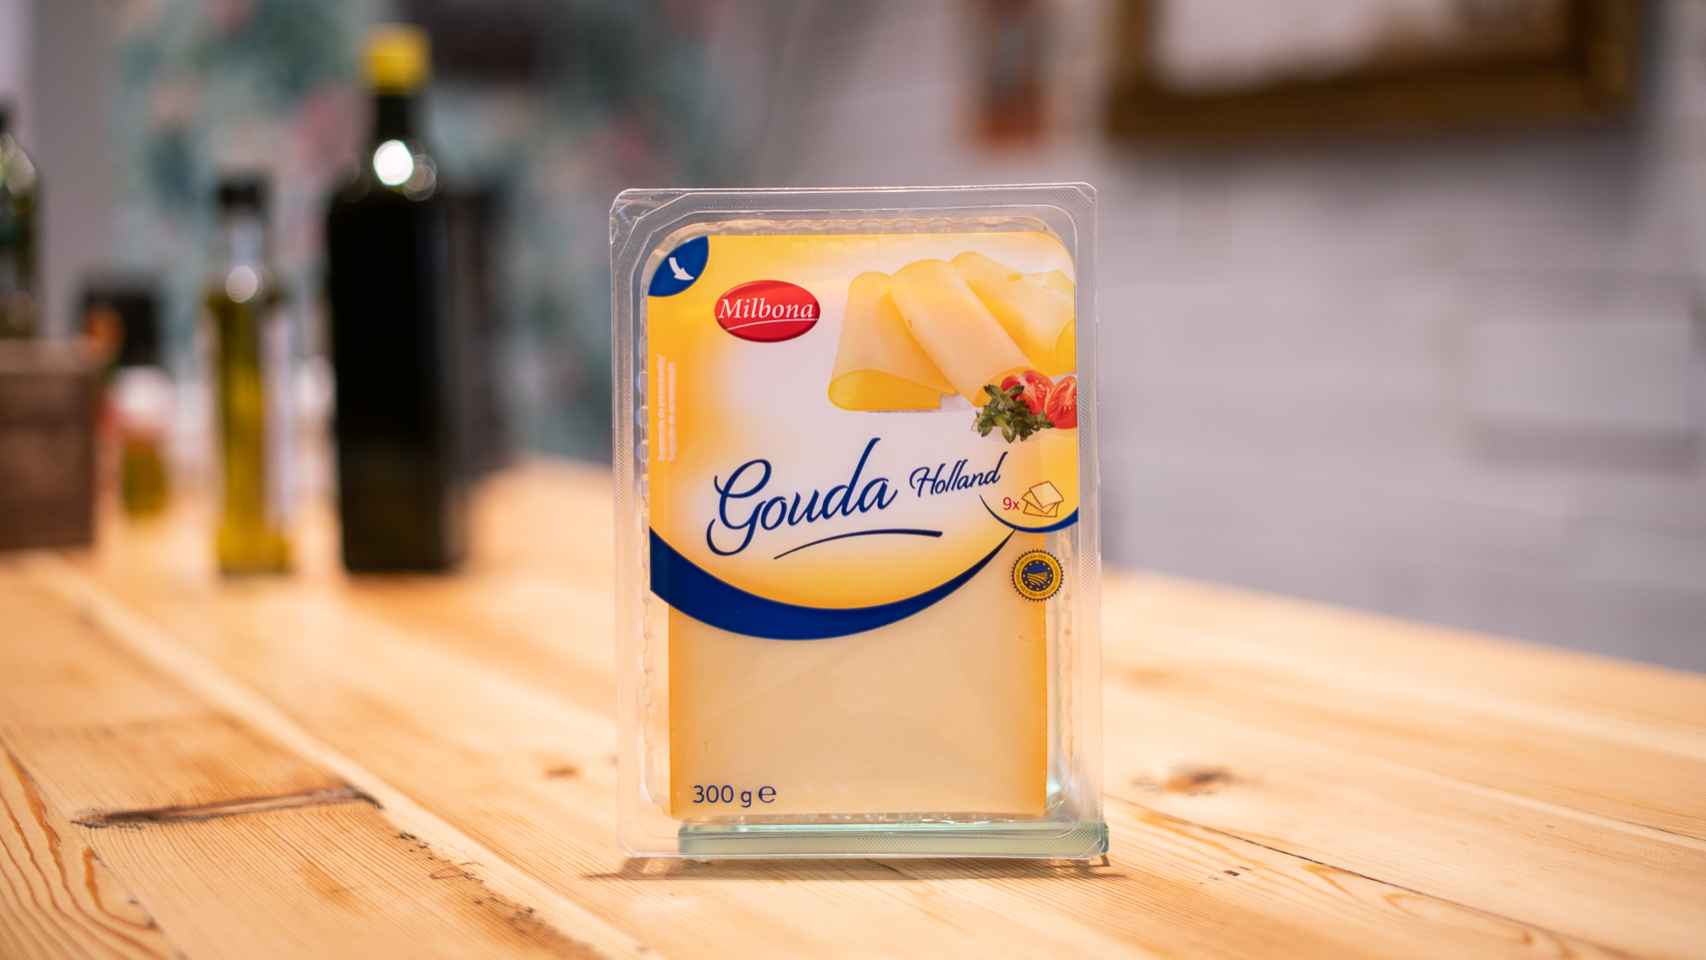 El paquete de queso Gouda en lonchas de Milbona, la marca blanca de productos lácteos de Lidl.